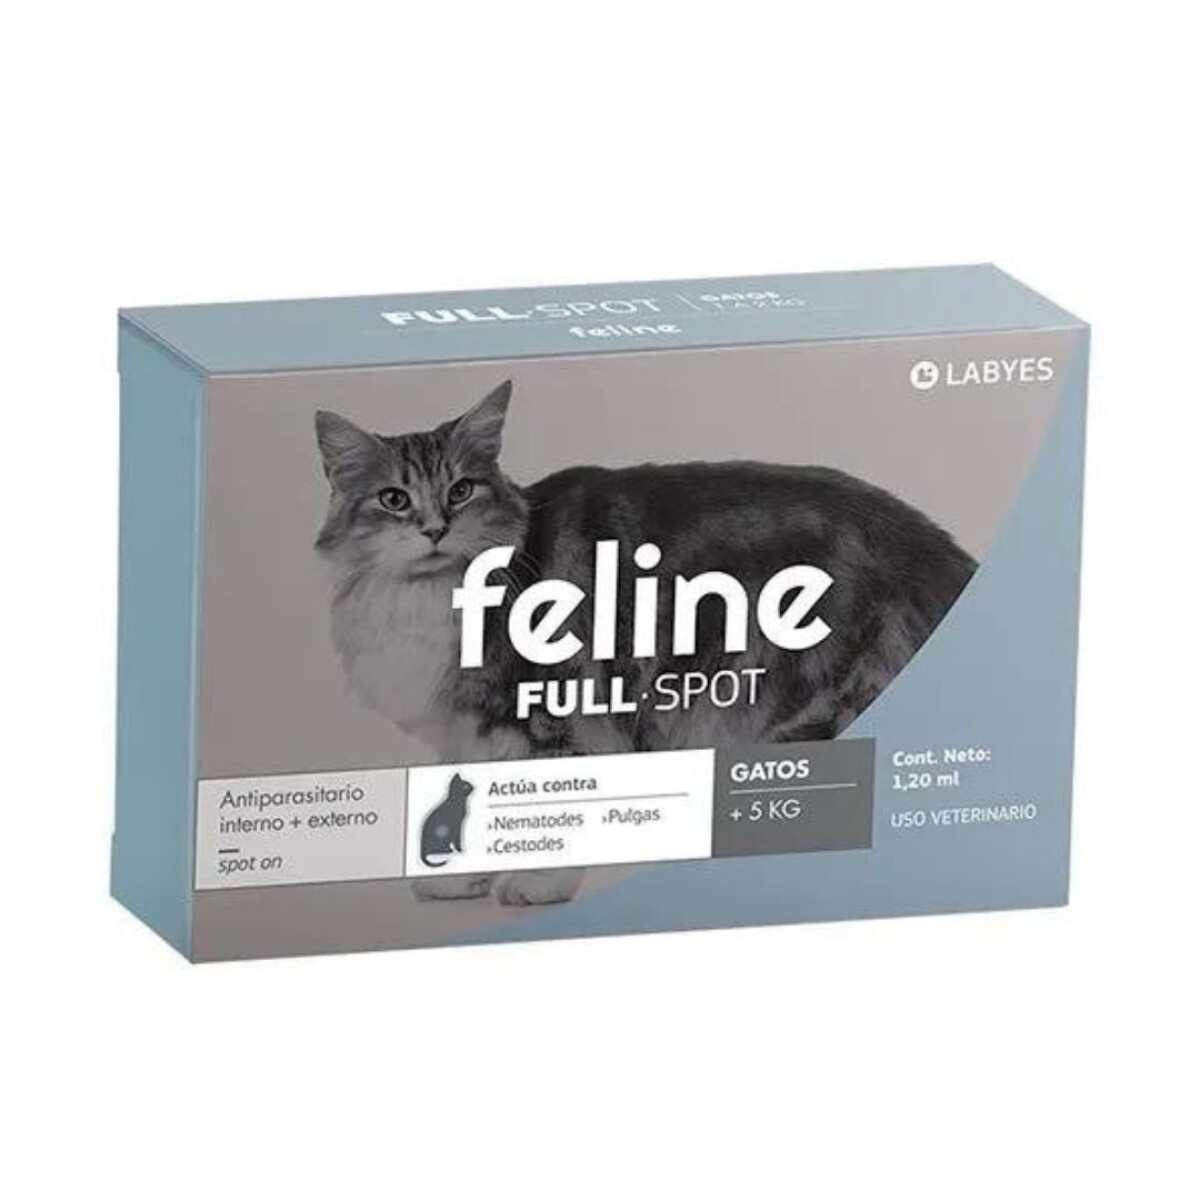 Feline Fullspot + De 5 Kg 